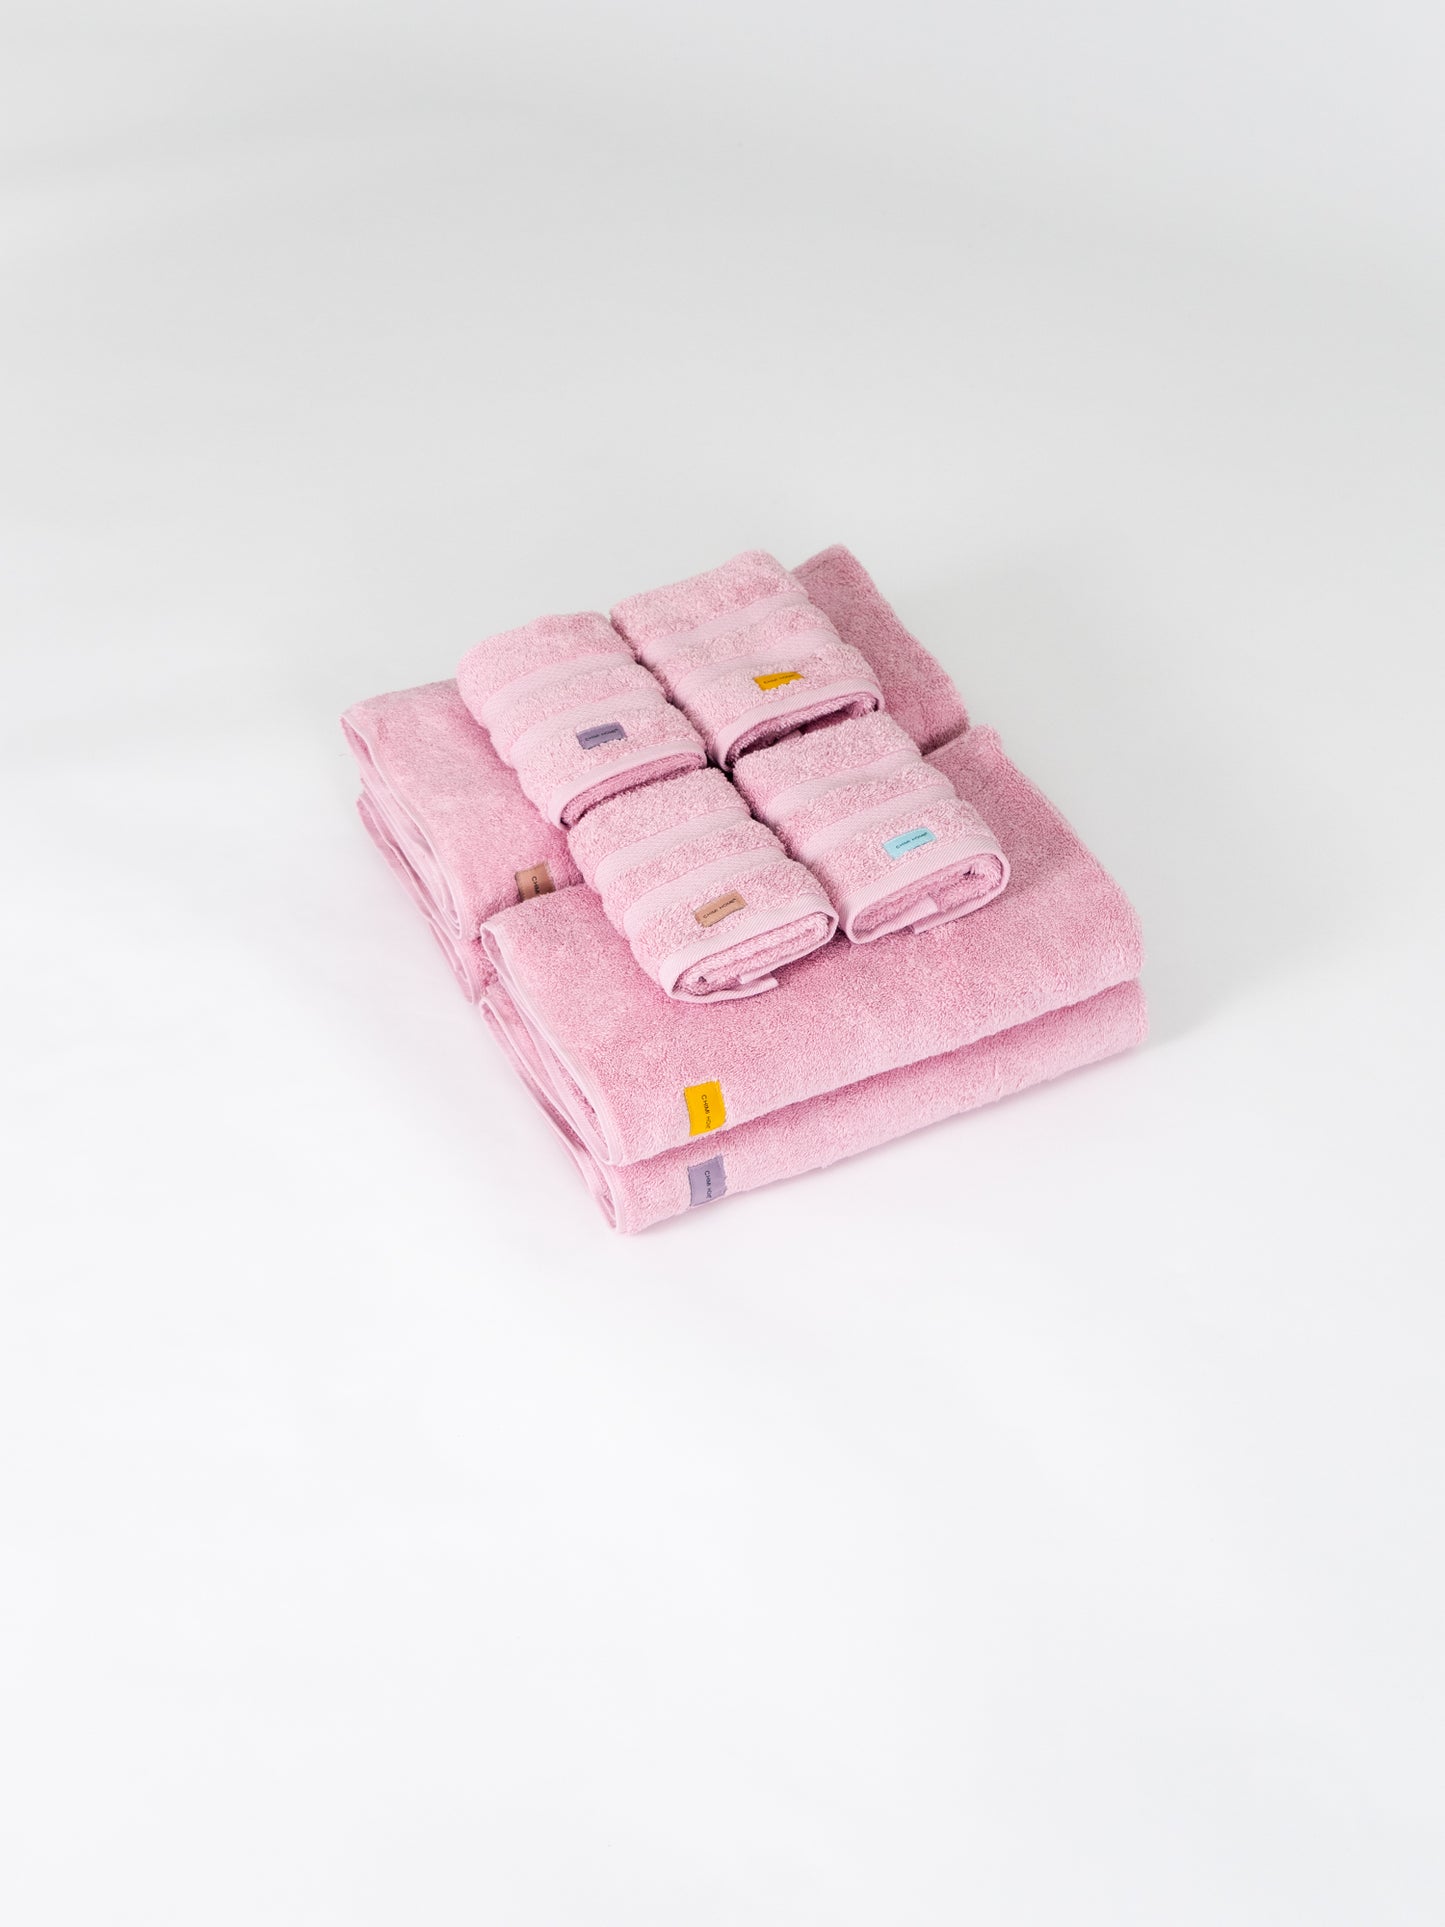 Handtuch - Soft Pink